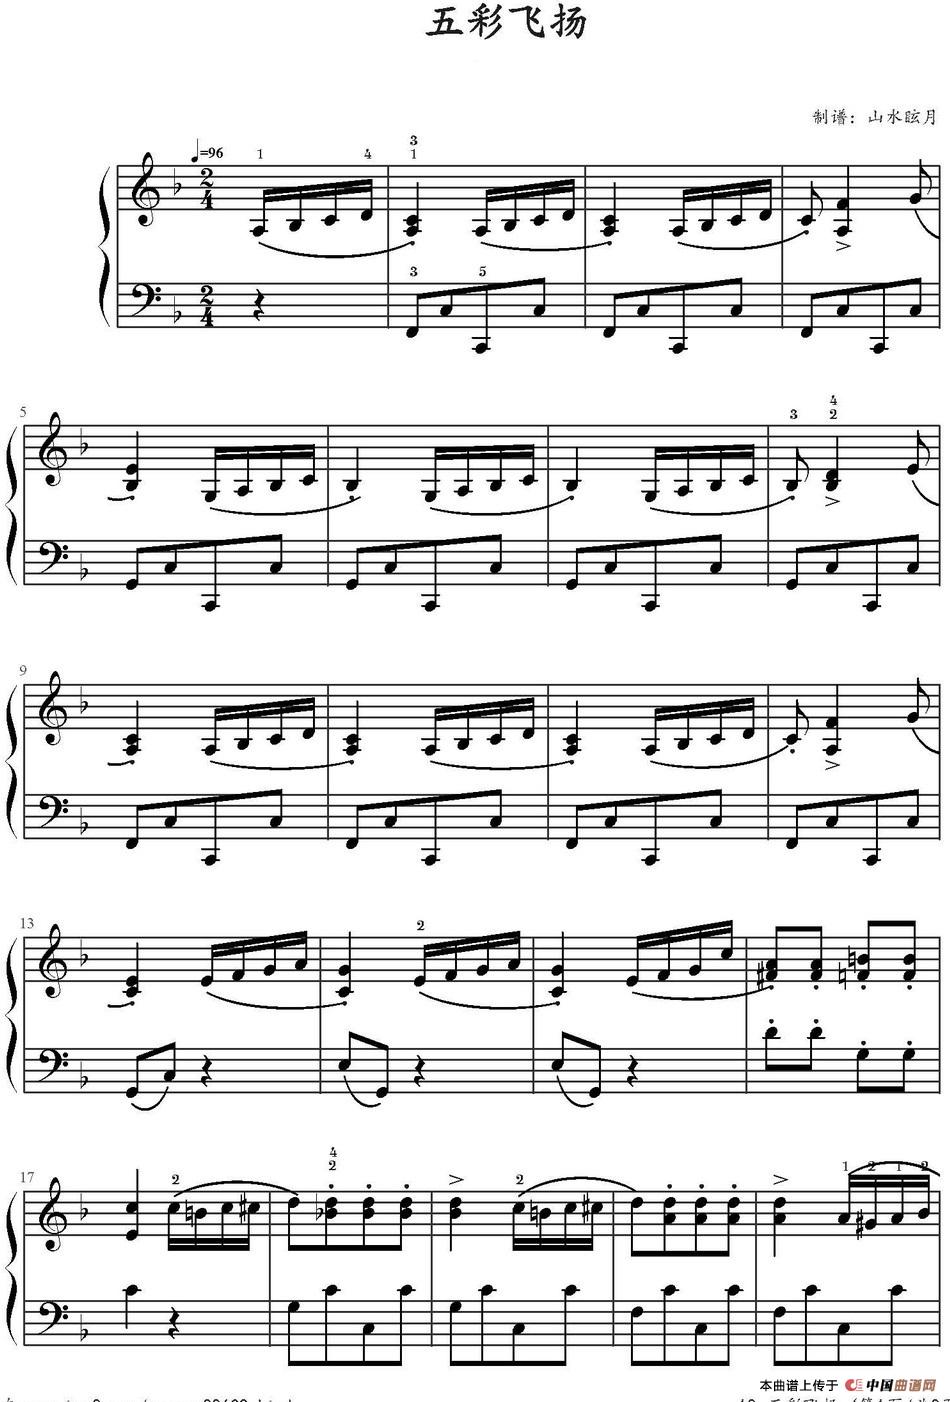 《五彩飞扬》钢琴曲谱图分享